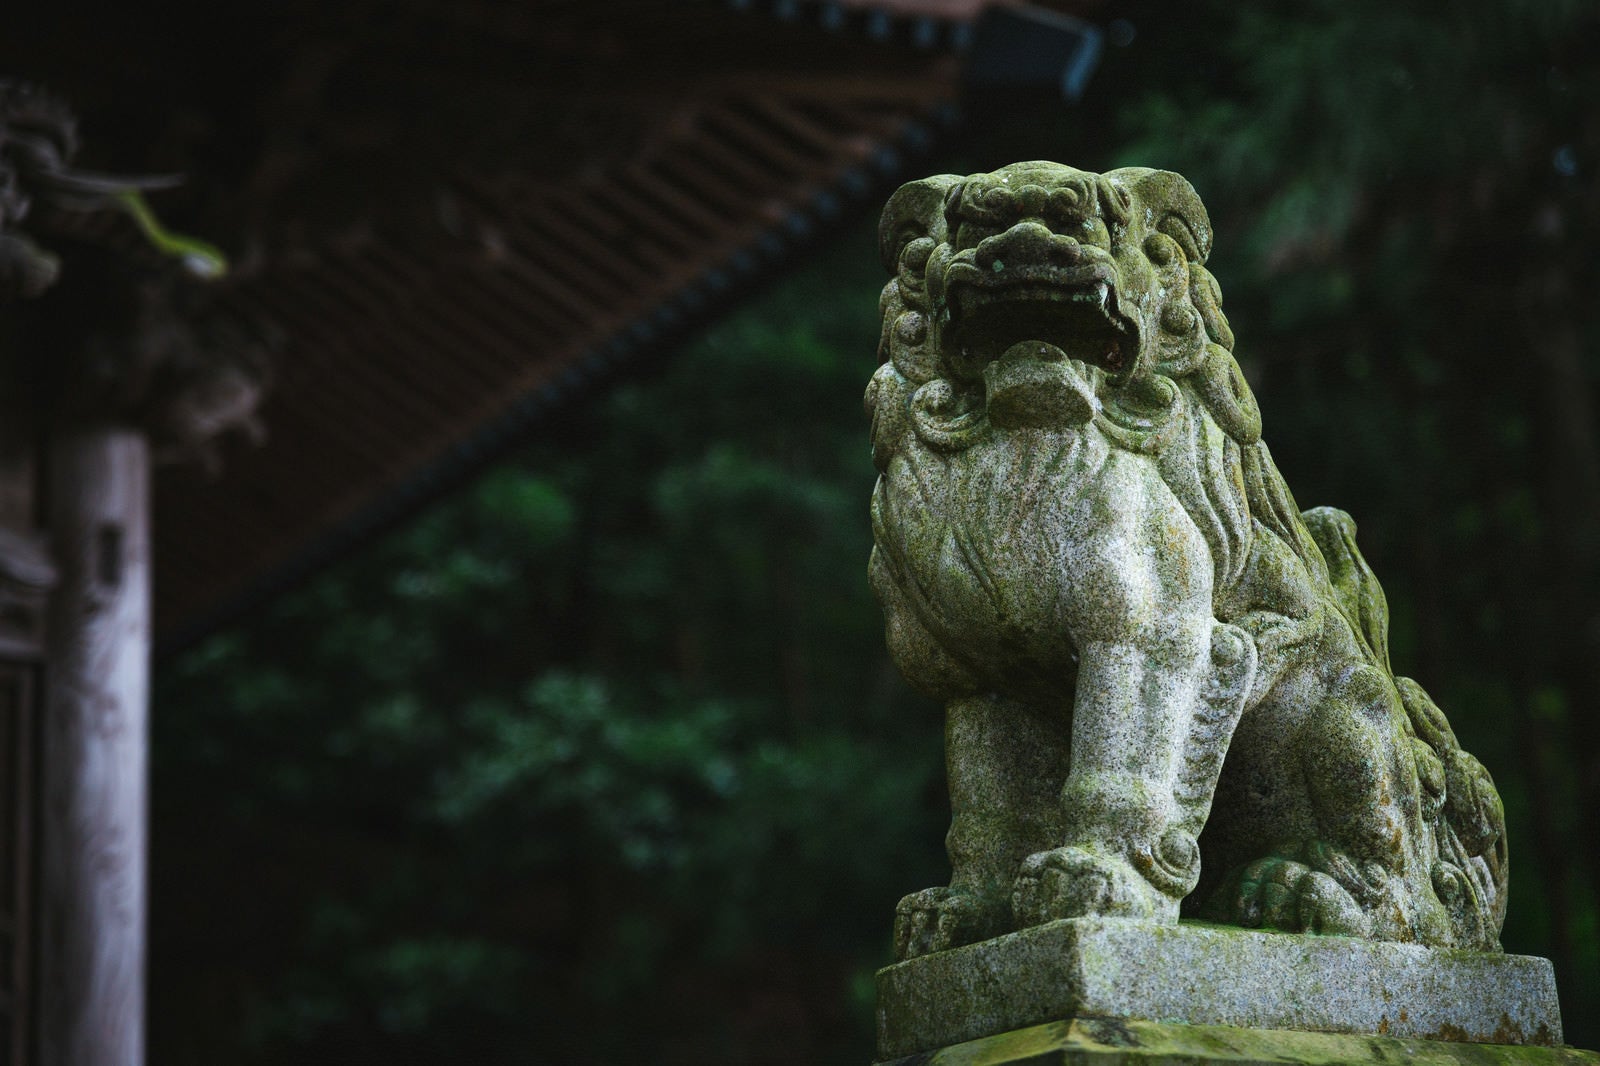 「「王城山神社」の狛犬」の写真